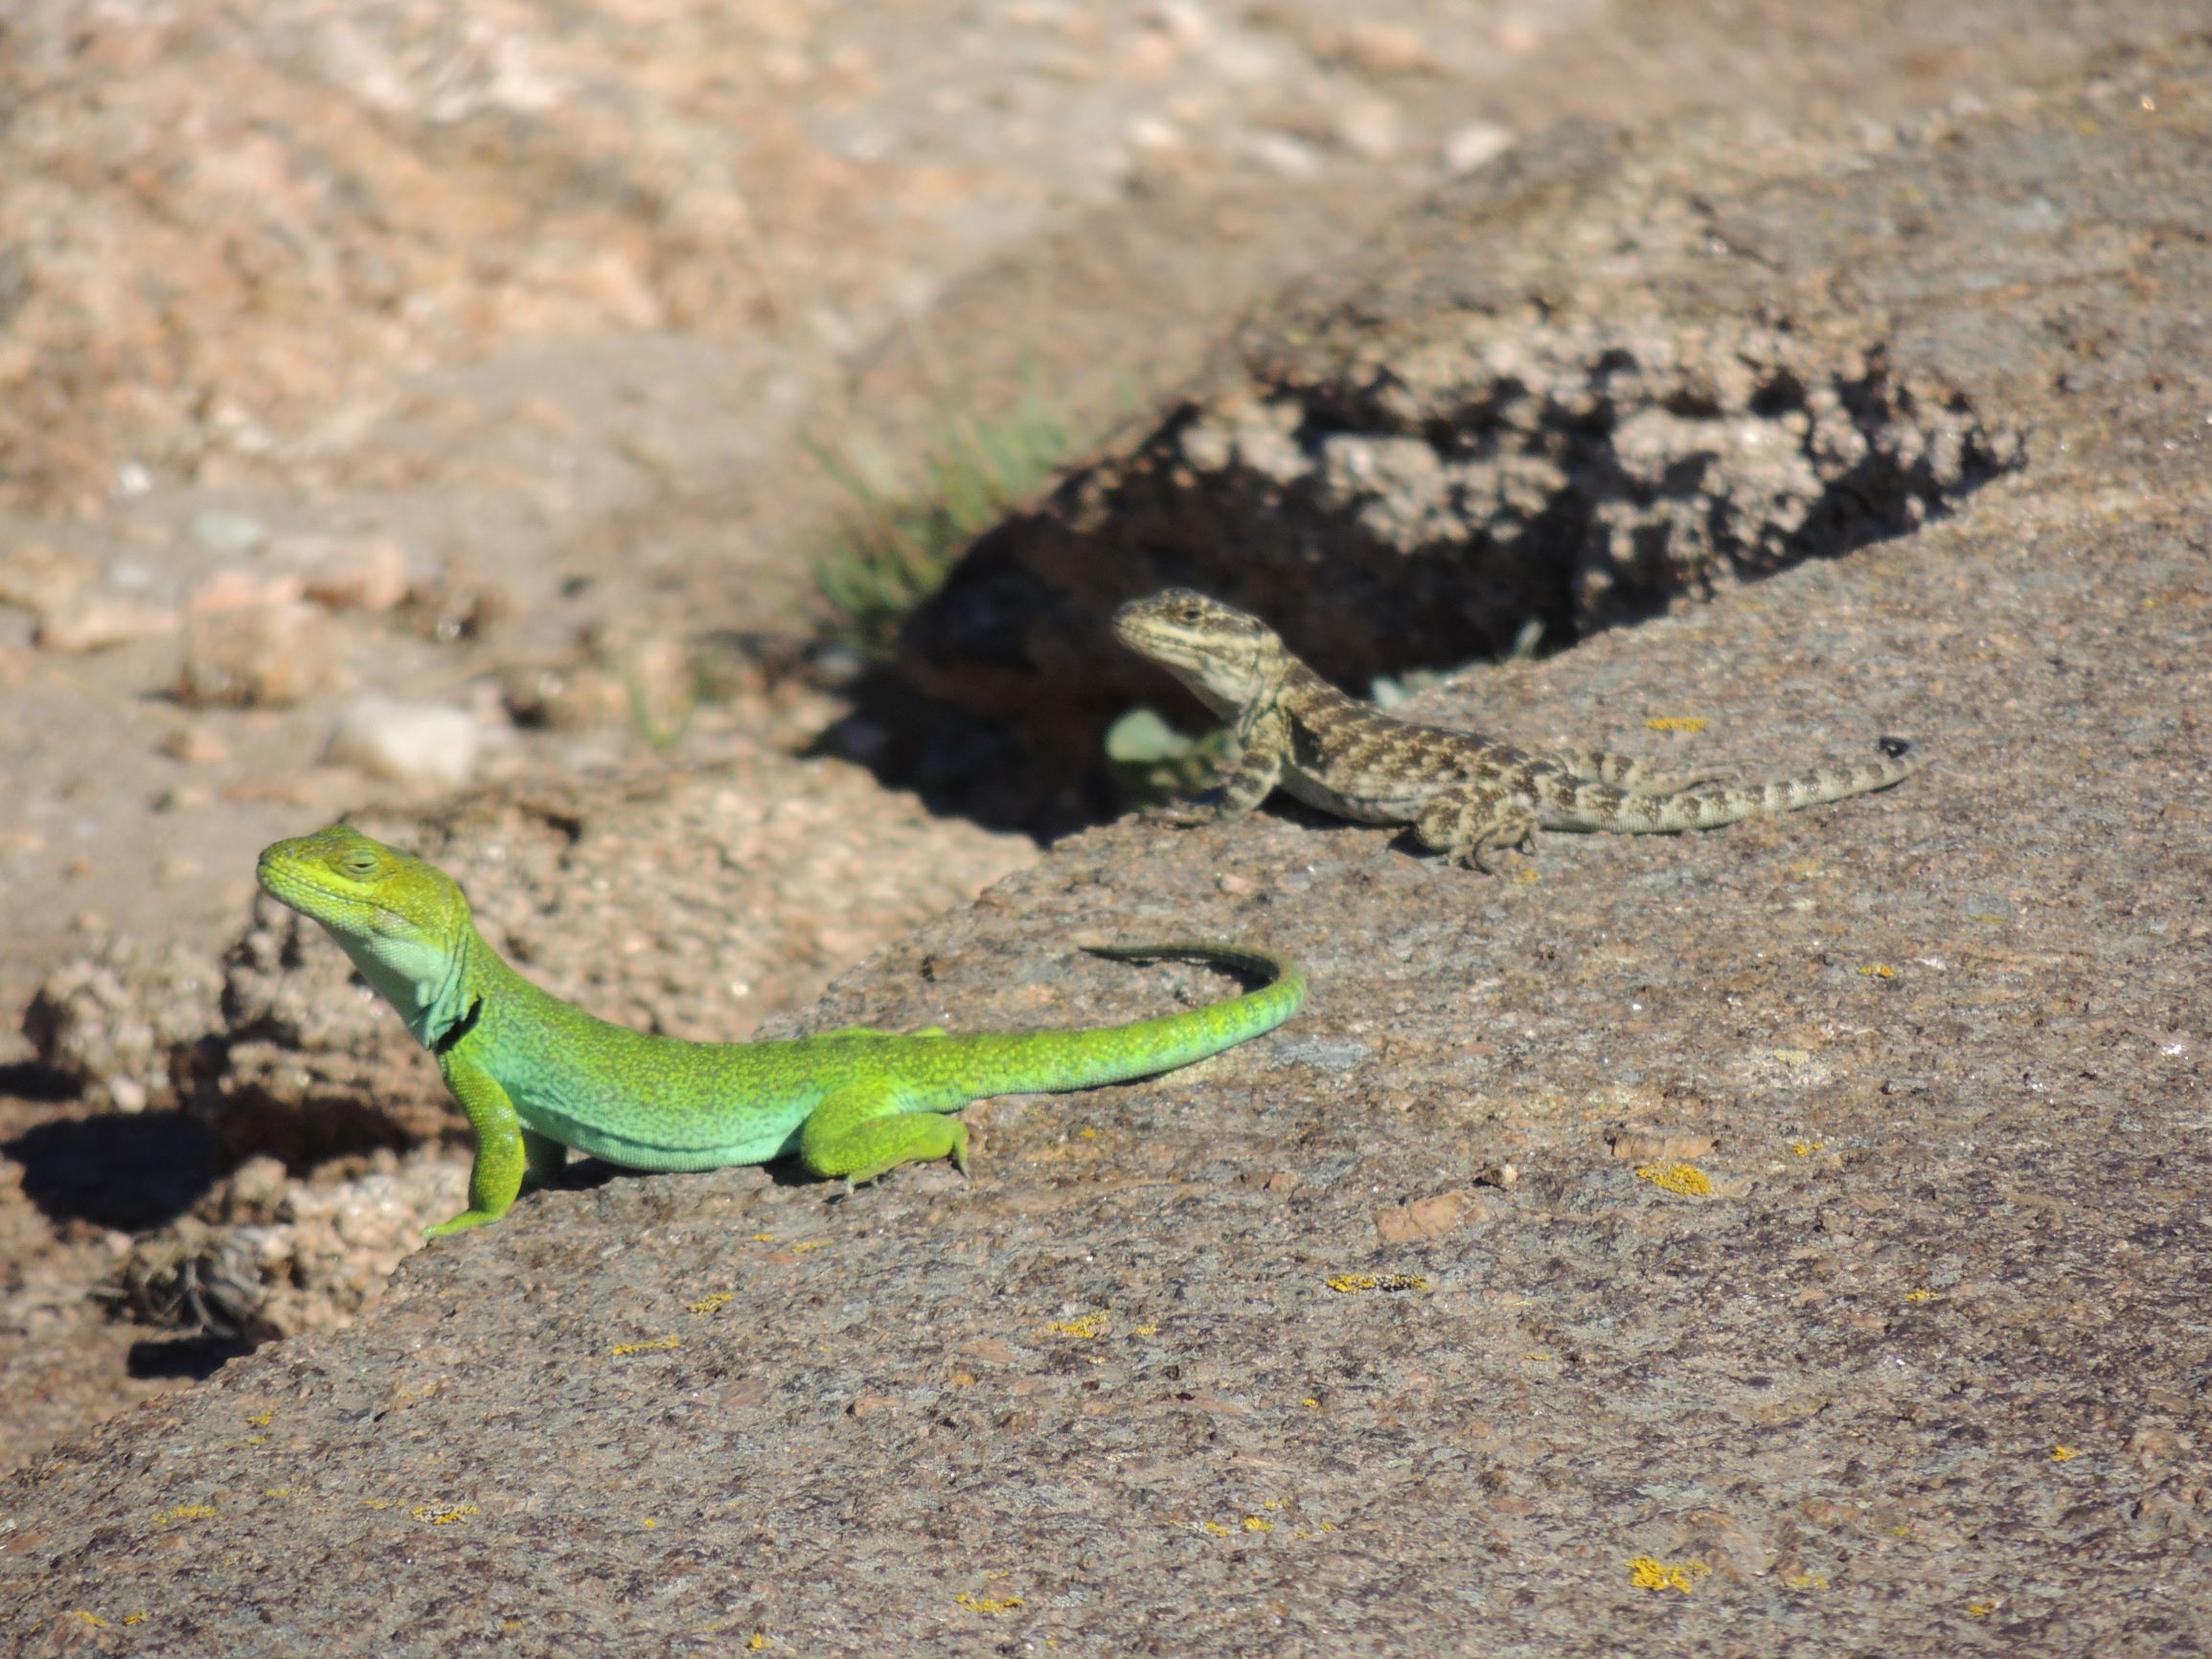 Dimorfismo sexual y variabilidad de la coloración del lagarto de Achala